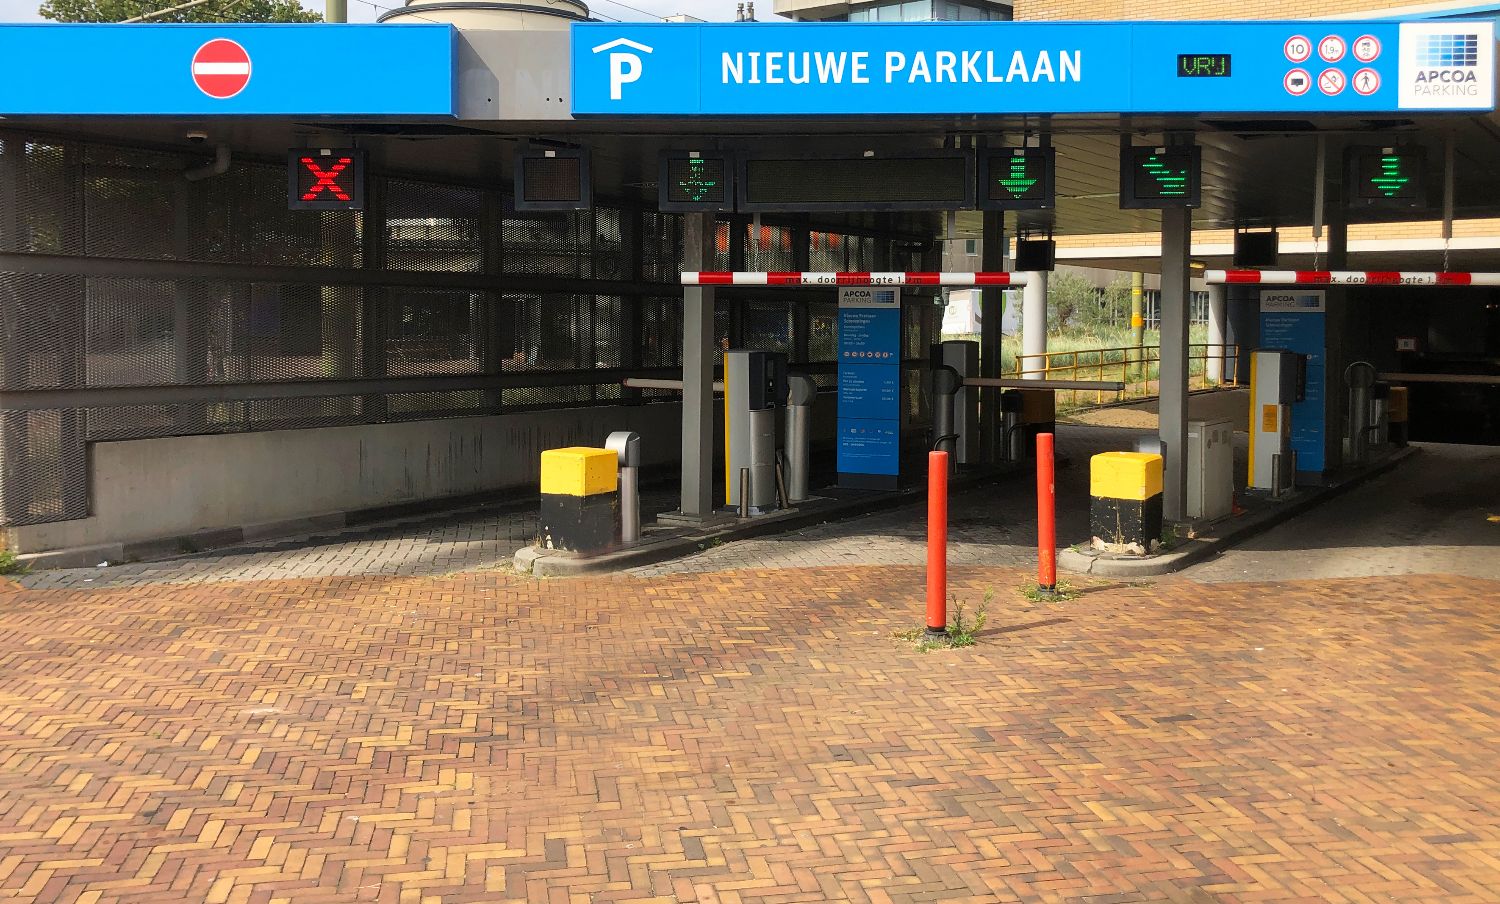 Parkeergarage Nieuwe Parklaan